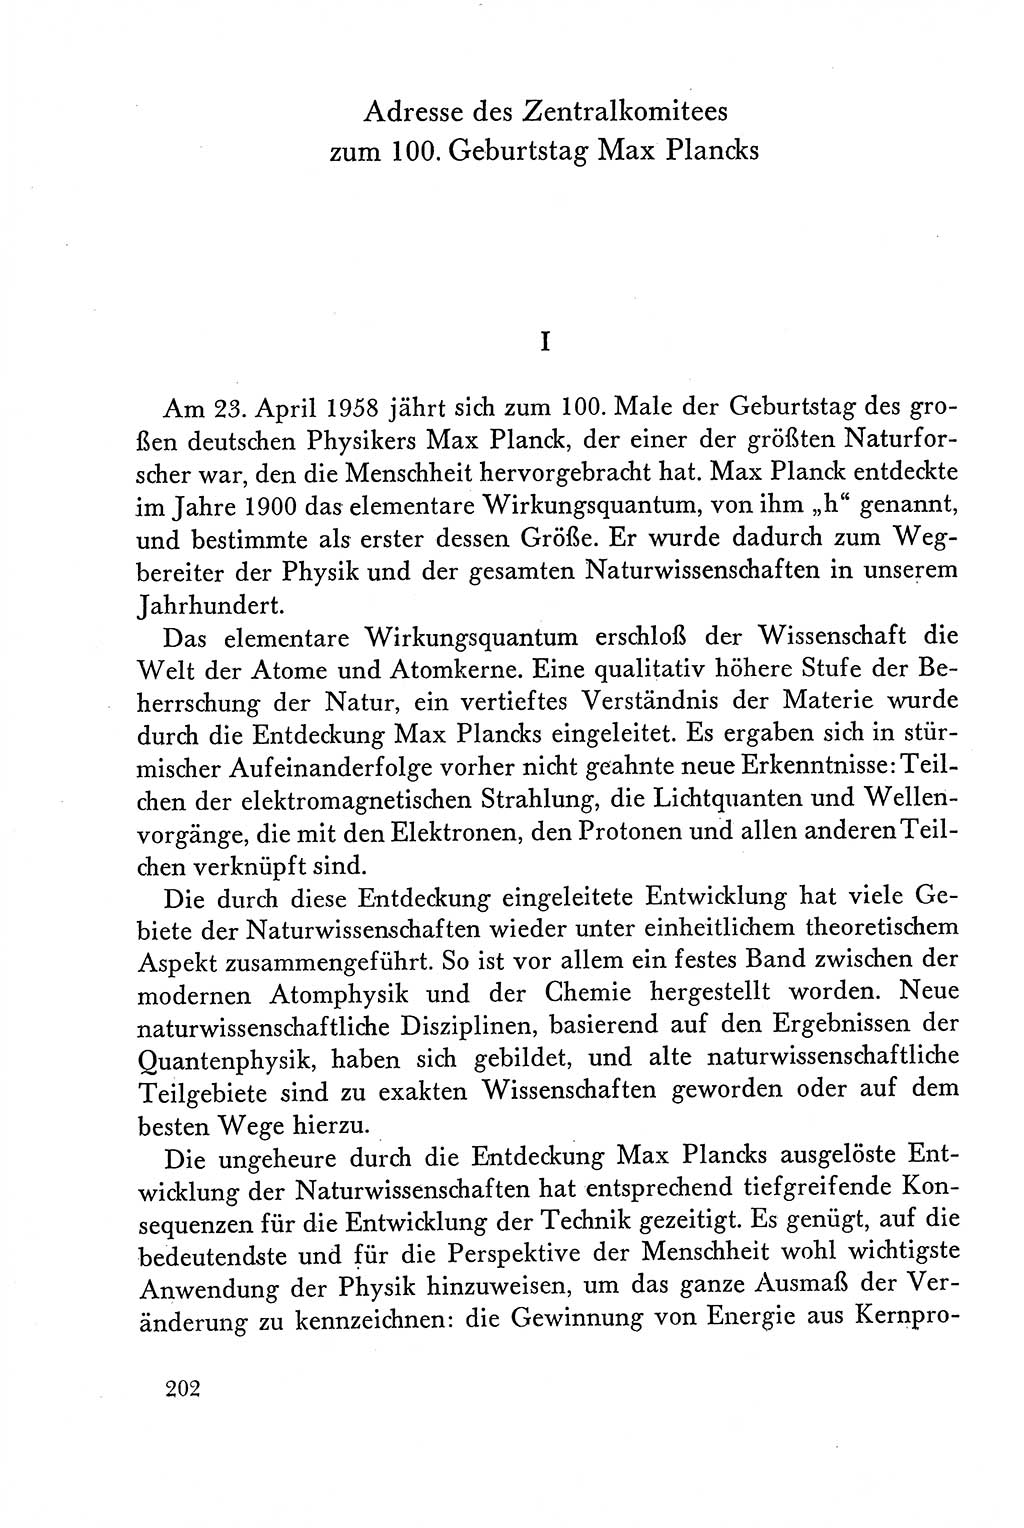 Dokumente der Sozialistischen Einheitspartei Deutschlands (SED) [Deutsche Demokratische Republik (DDR)] 1958-1959, Seite 202 (Dok. SED DDR 1958-1959, S. 202)